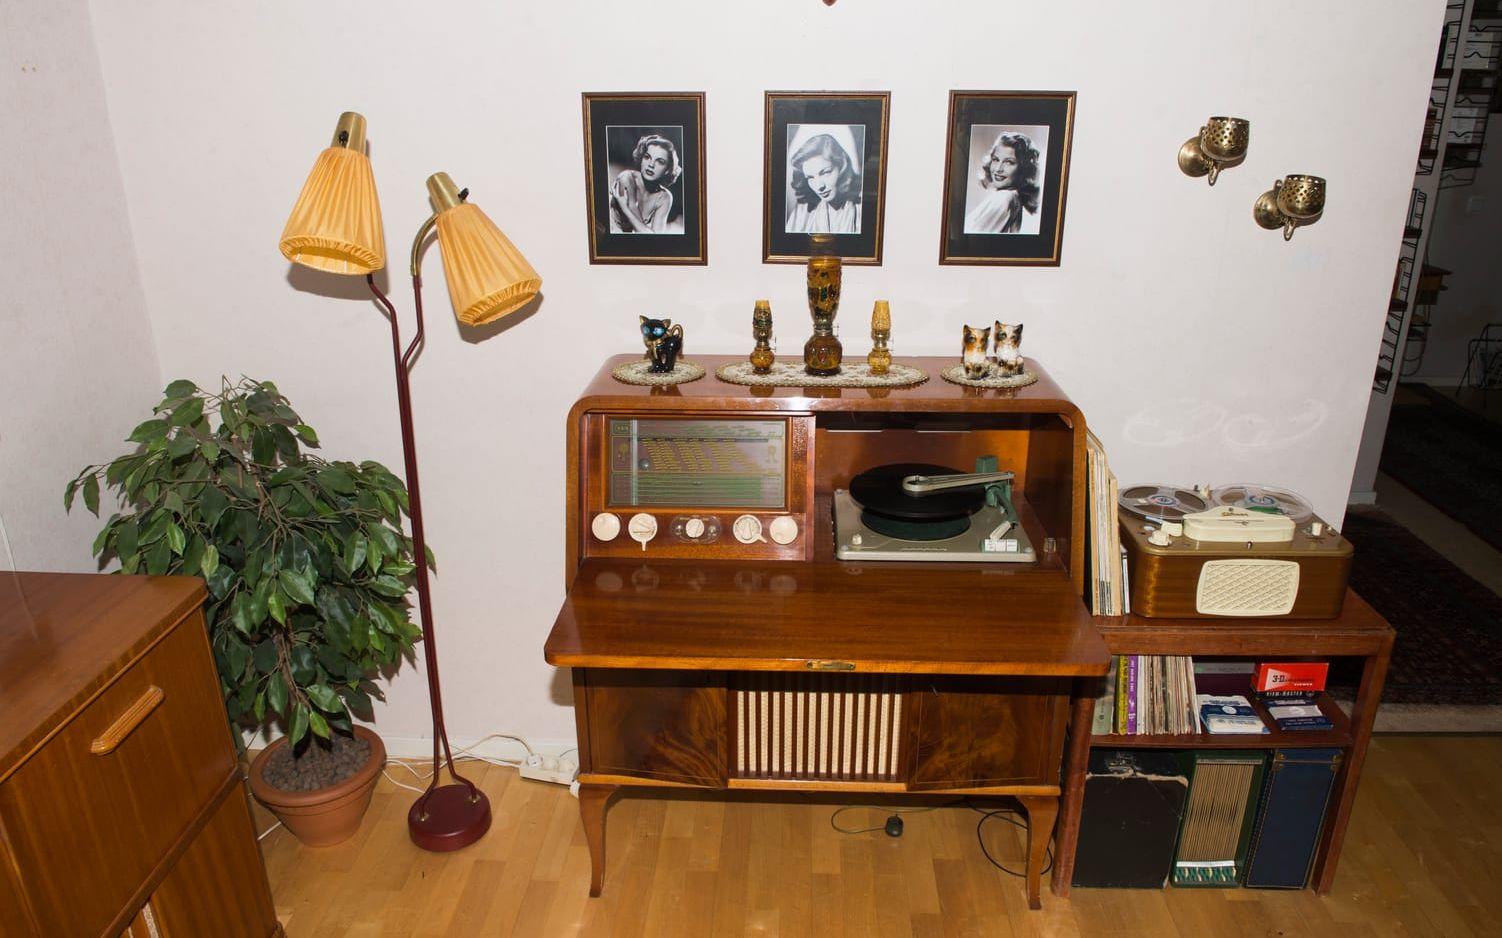 Bra ljud 1. Den gamla radiogrammofonen tillverkades 1954 och fungerar in i minsta detalj.